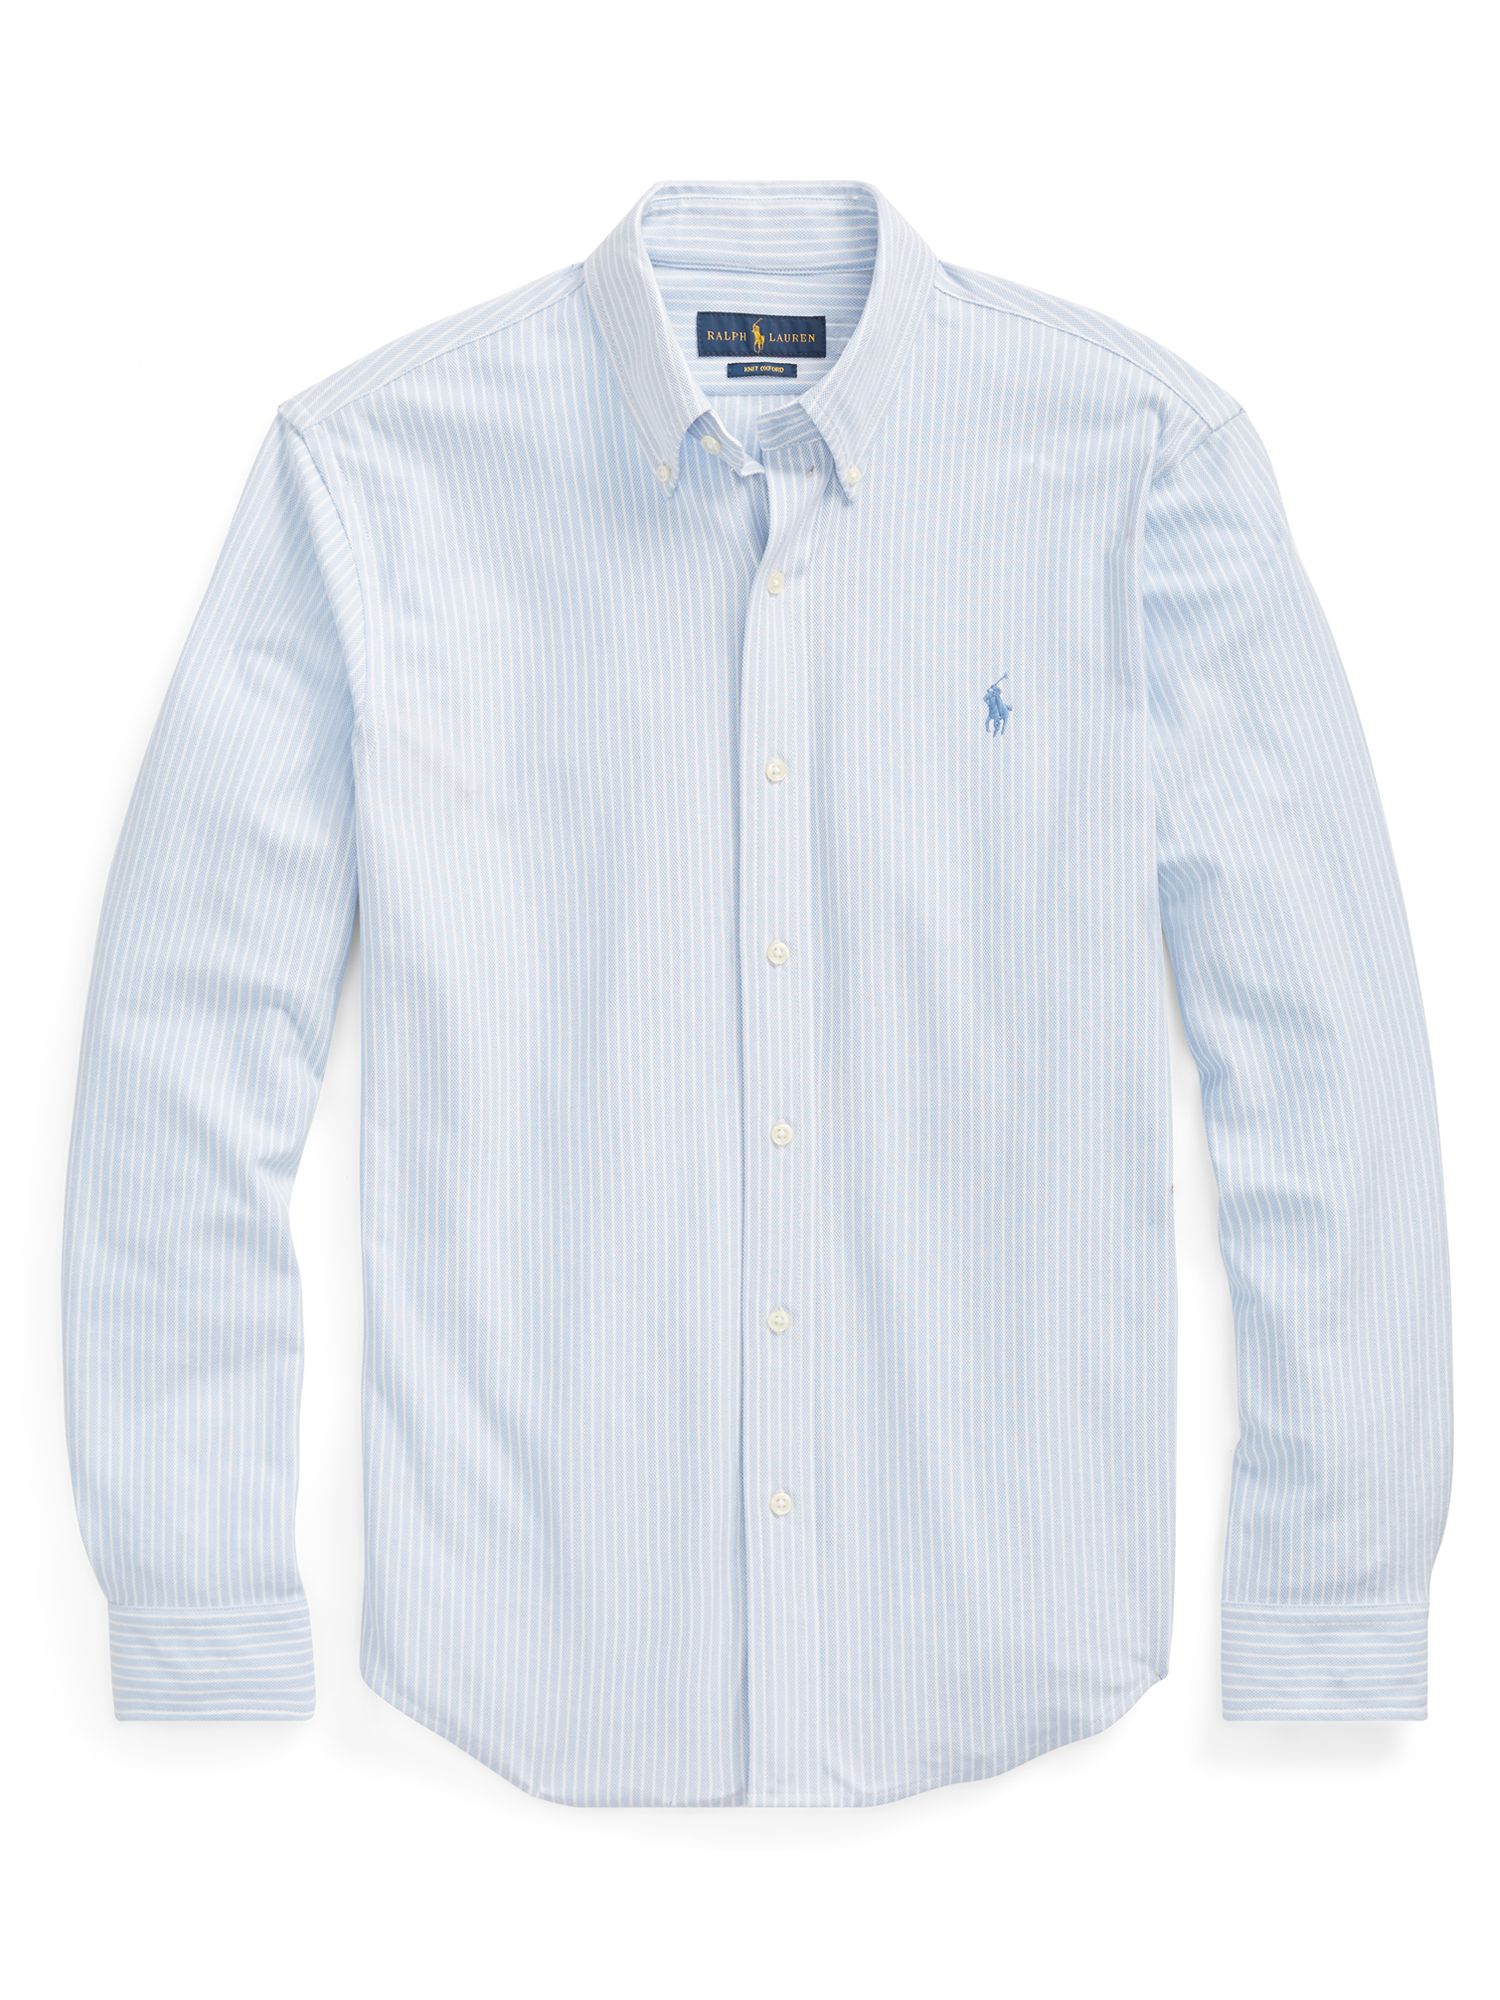 Polo Ralph Lauren Cotton Poplin Stripe Standard Fit Shirt, Dress Shirt ...